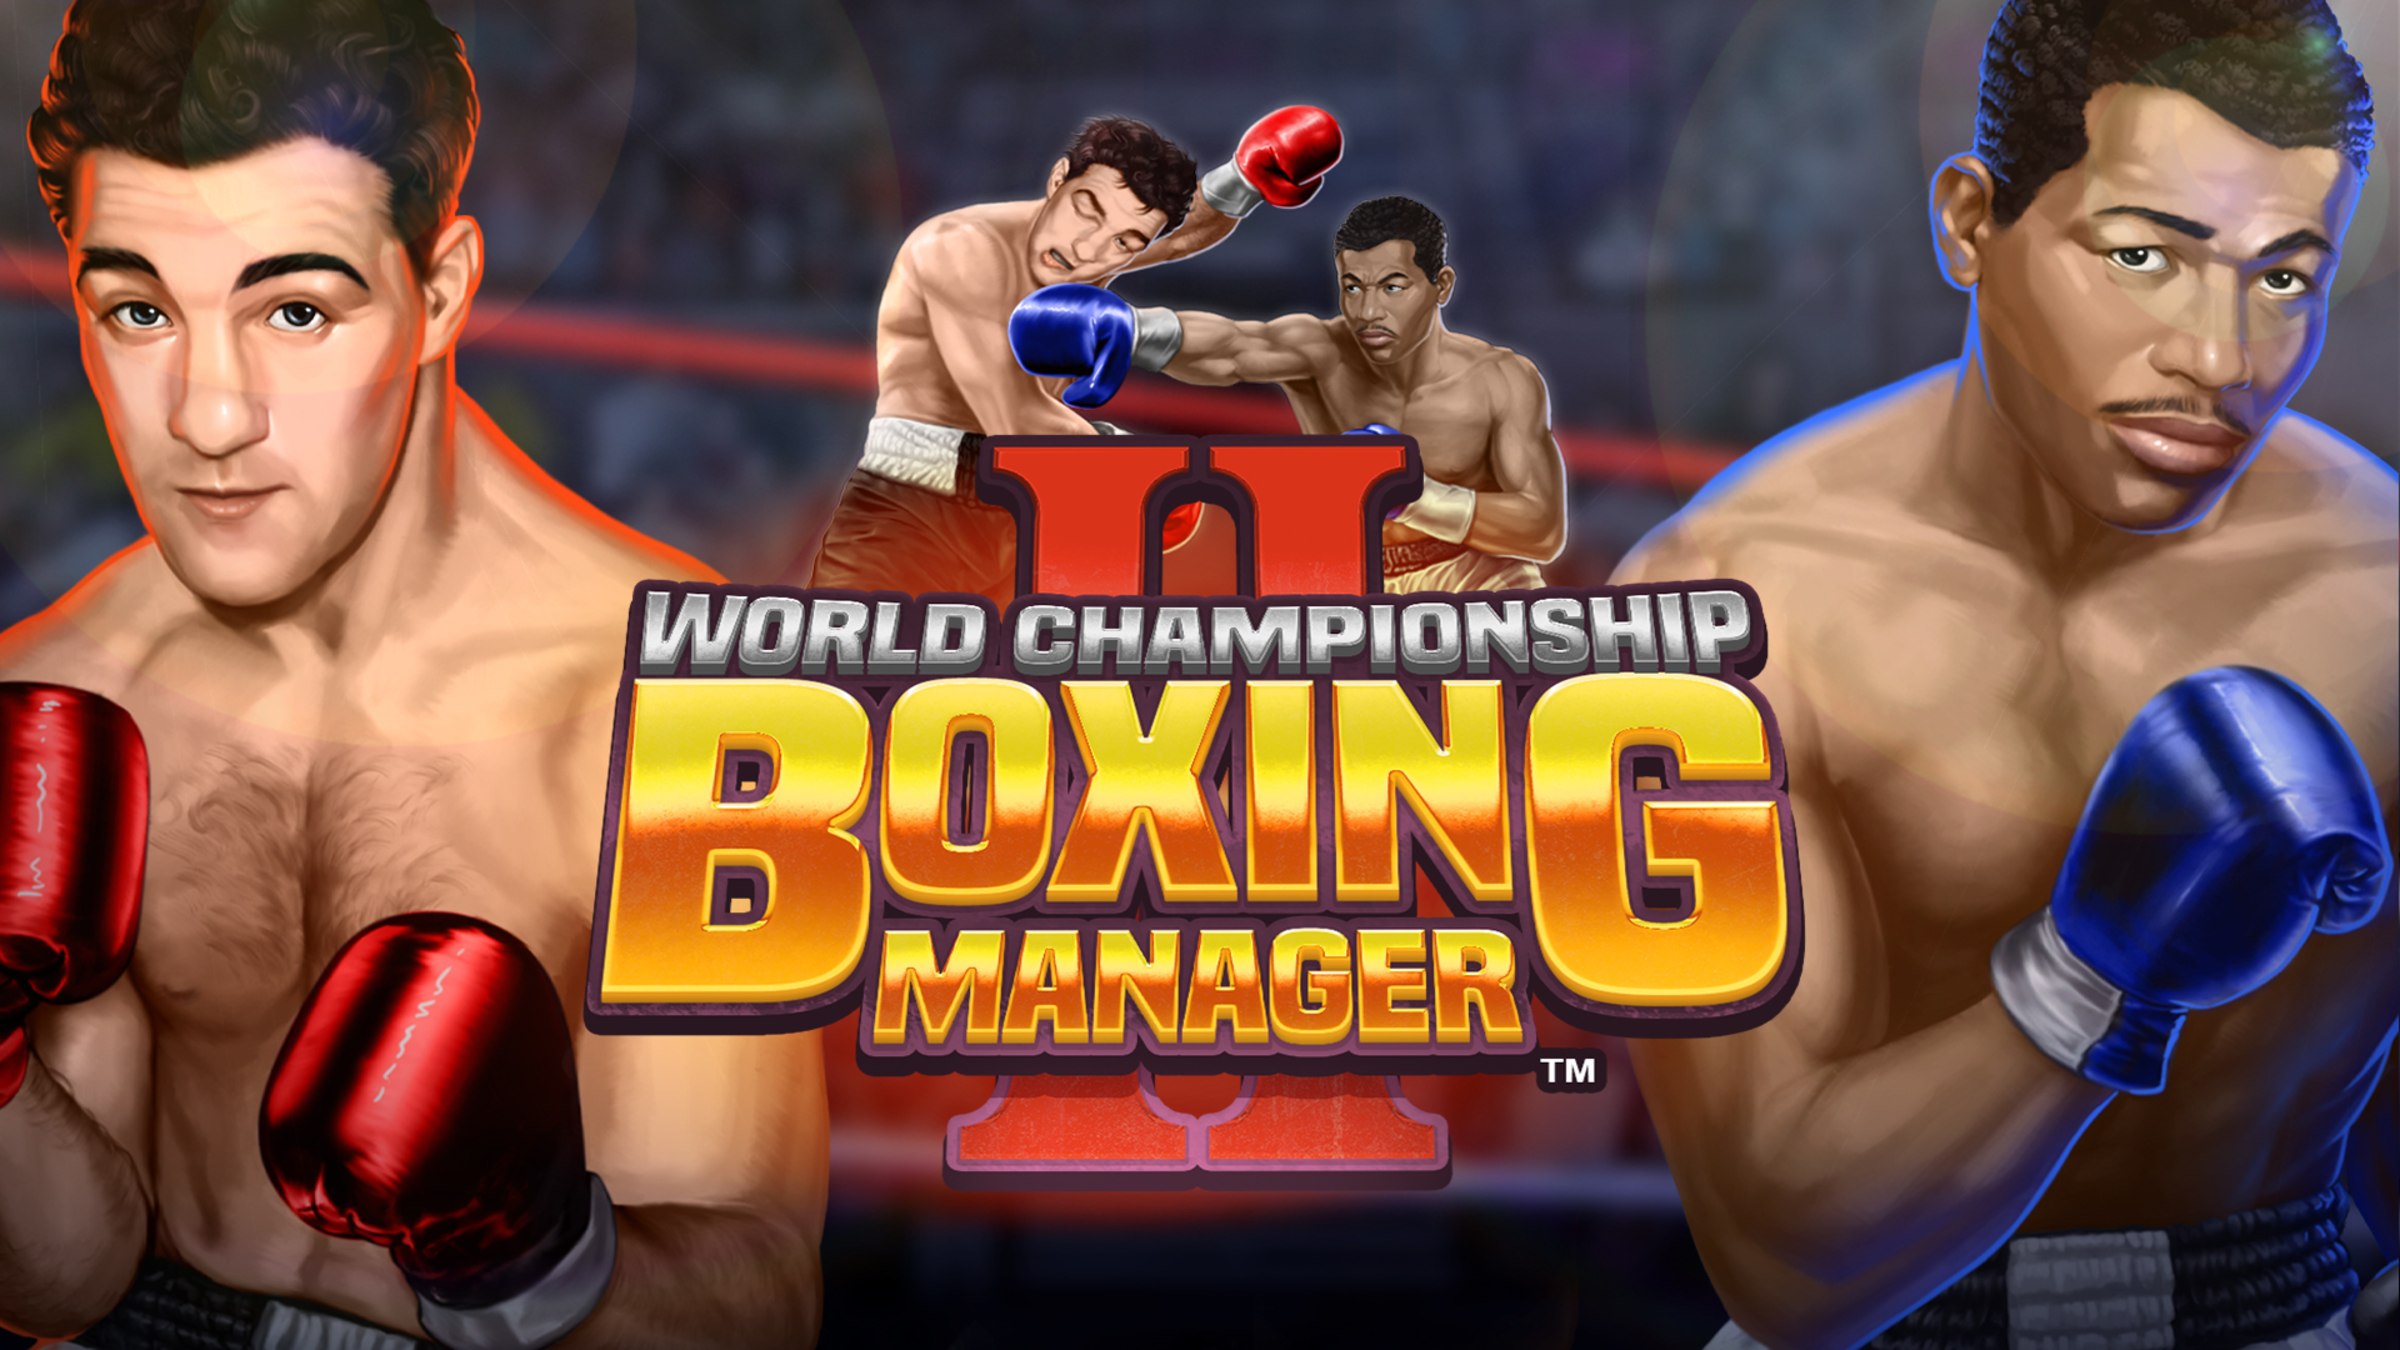 World Championship Boxing Manager 2 im Test - Teil zwei nach 33 Jahren,  aber war das nötig?